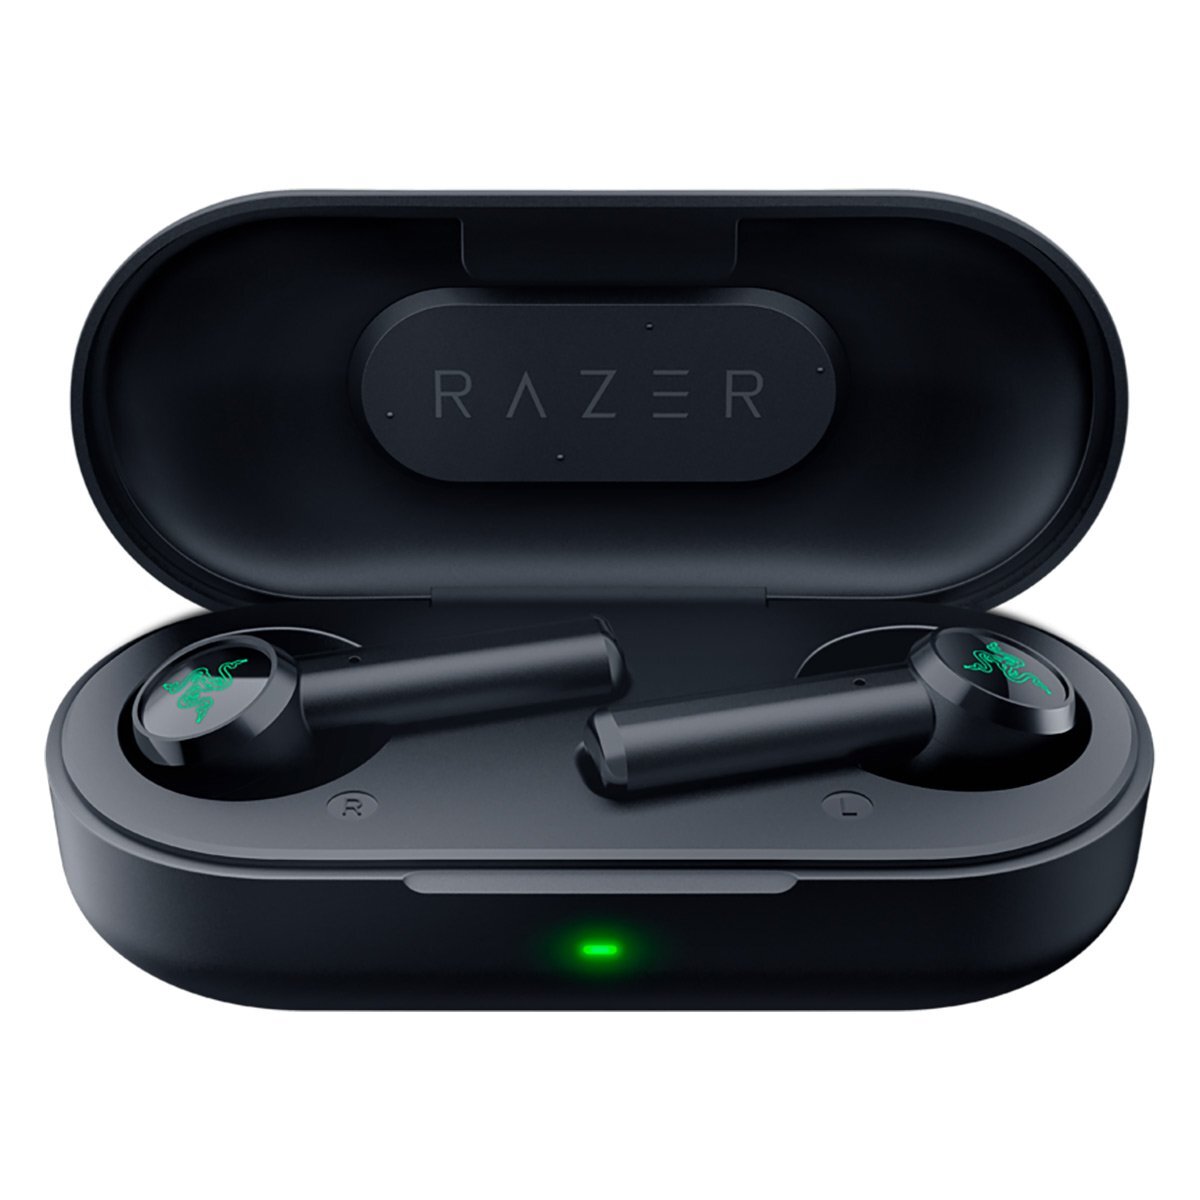 Tai nghe Razer Hammerhead True Wireless Earbuds